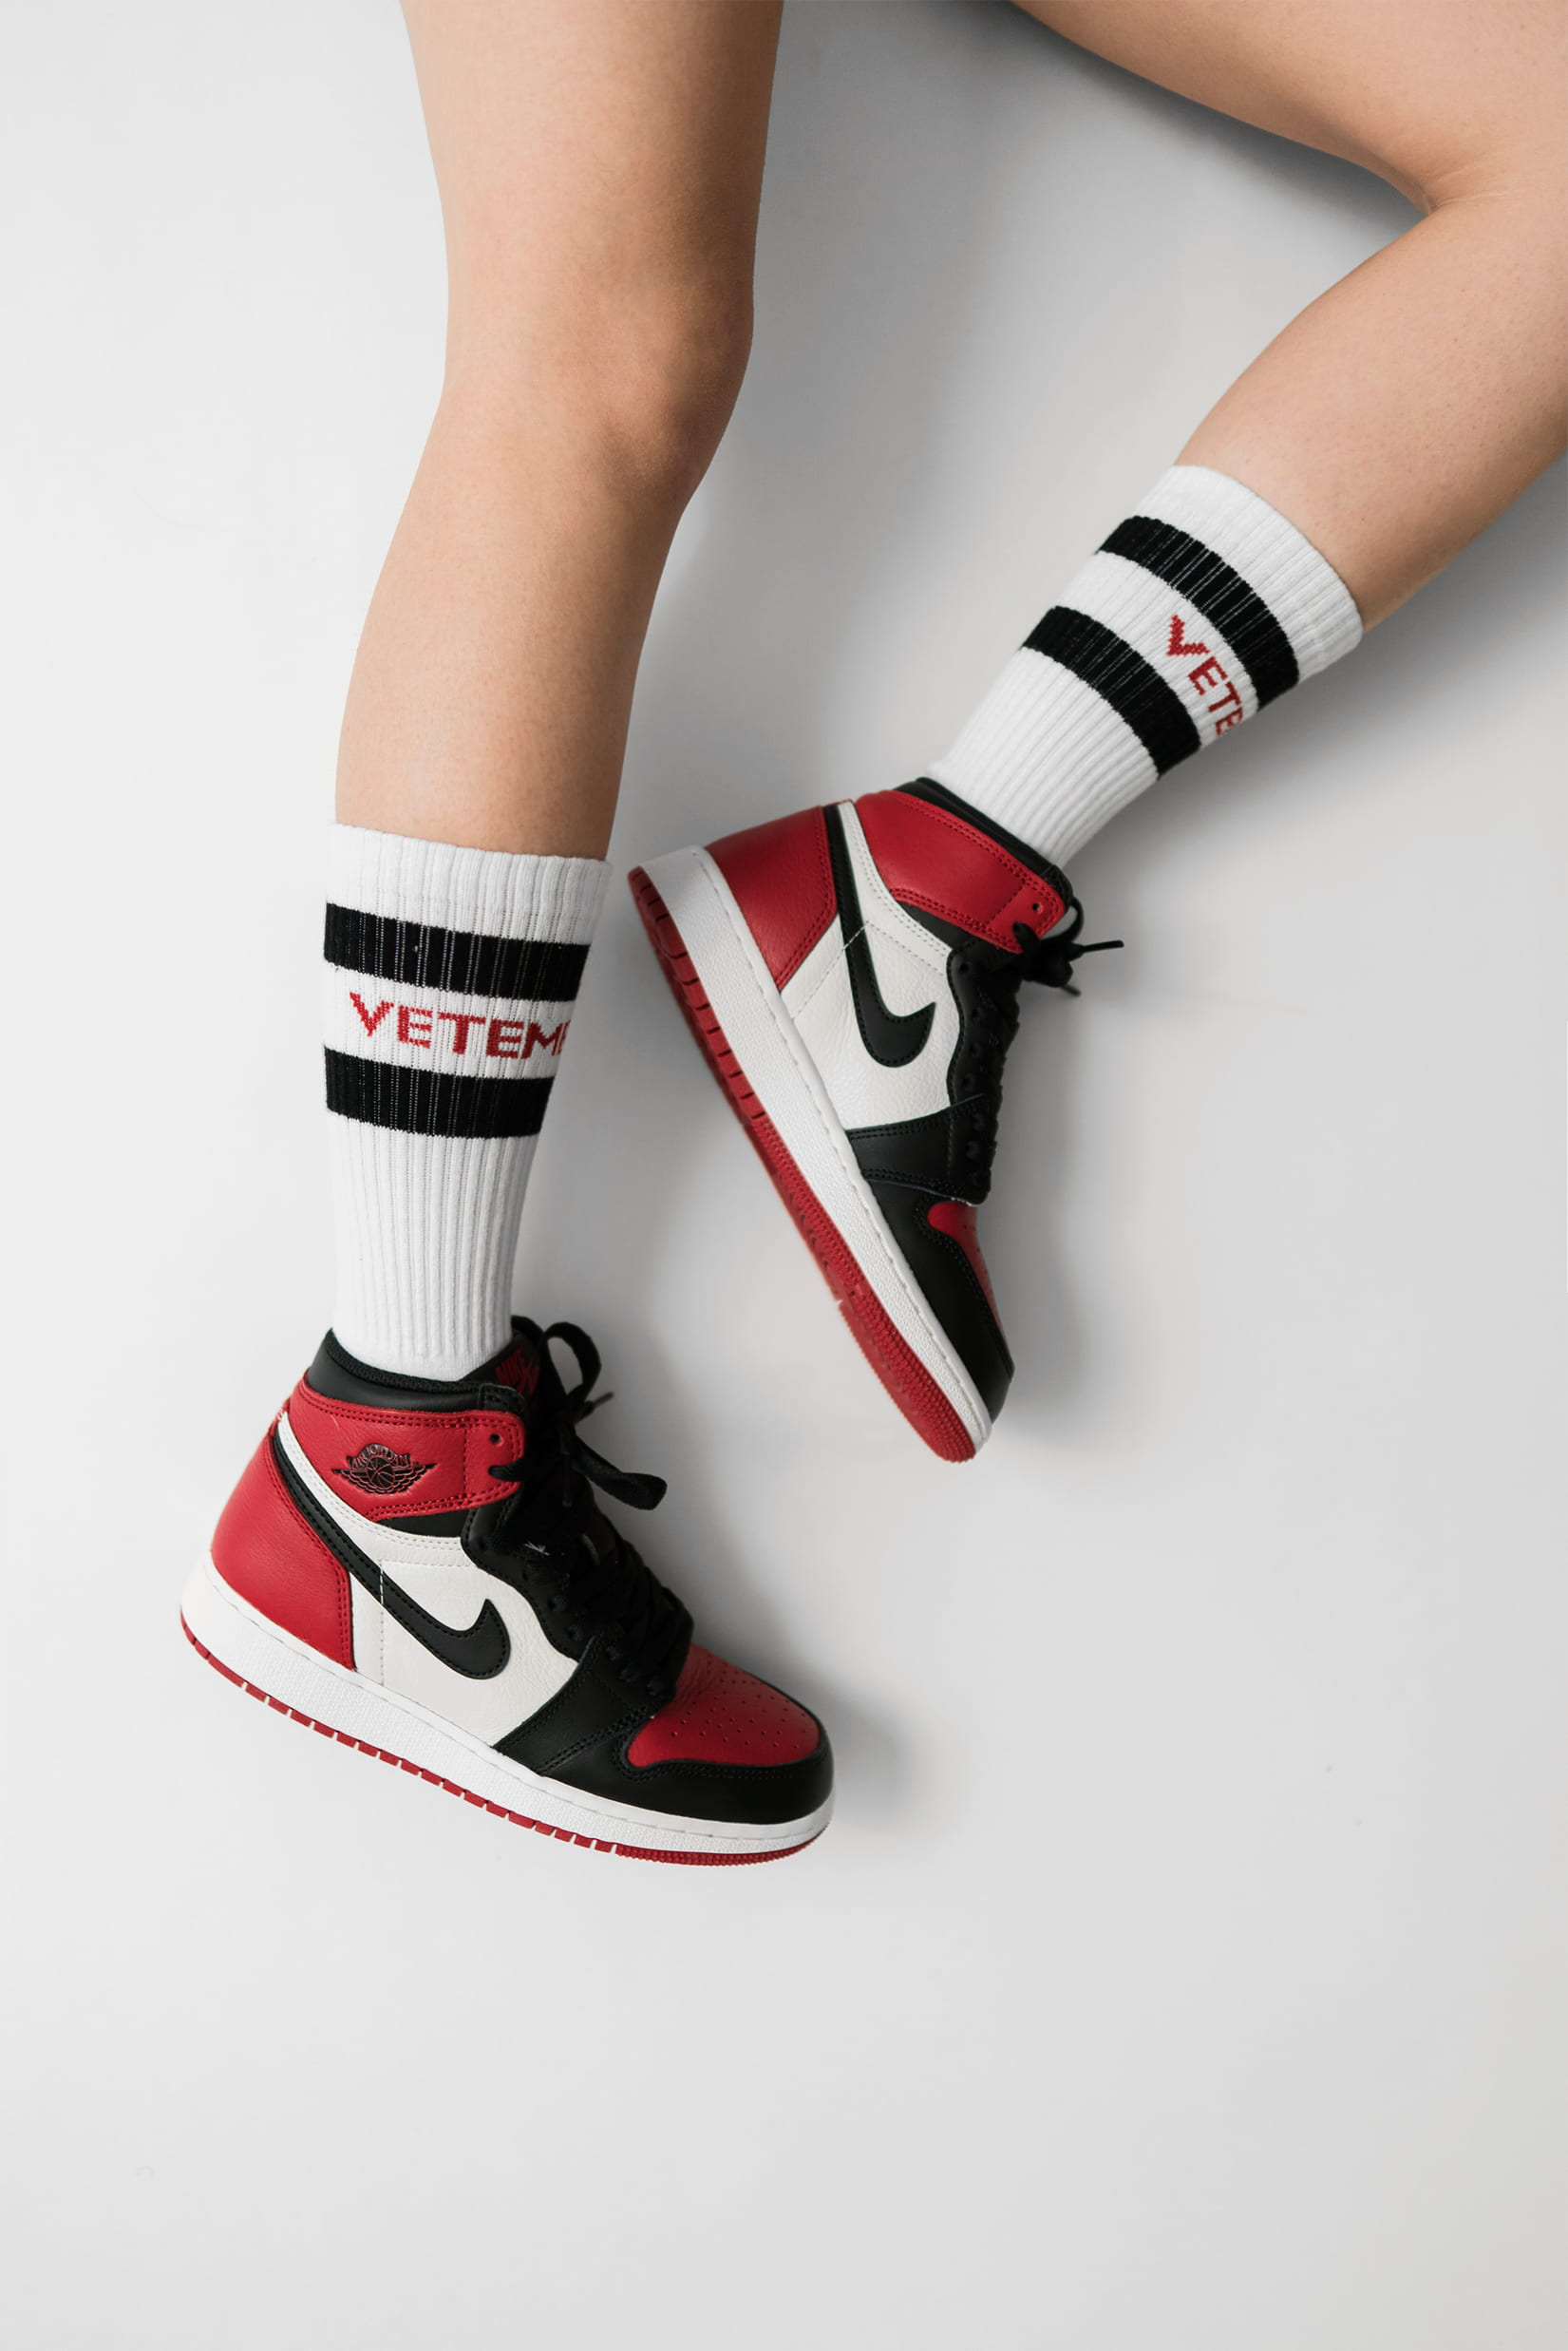 Wallpaper person wearing pair of black toe Air Jordan 1’s, white-red-and-black Nike Air Jordan 1’s